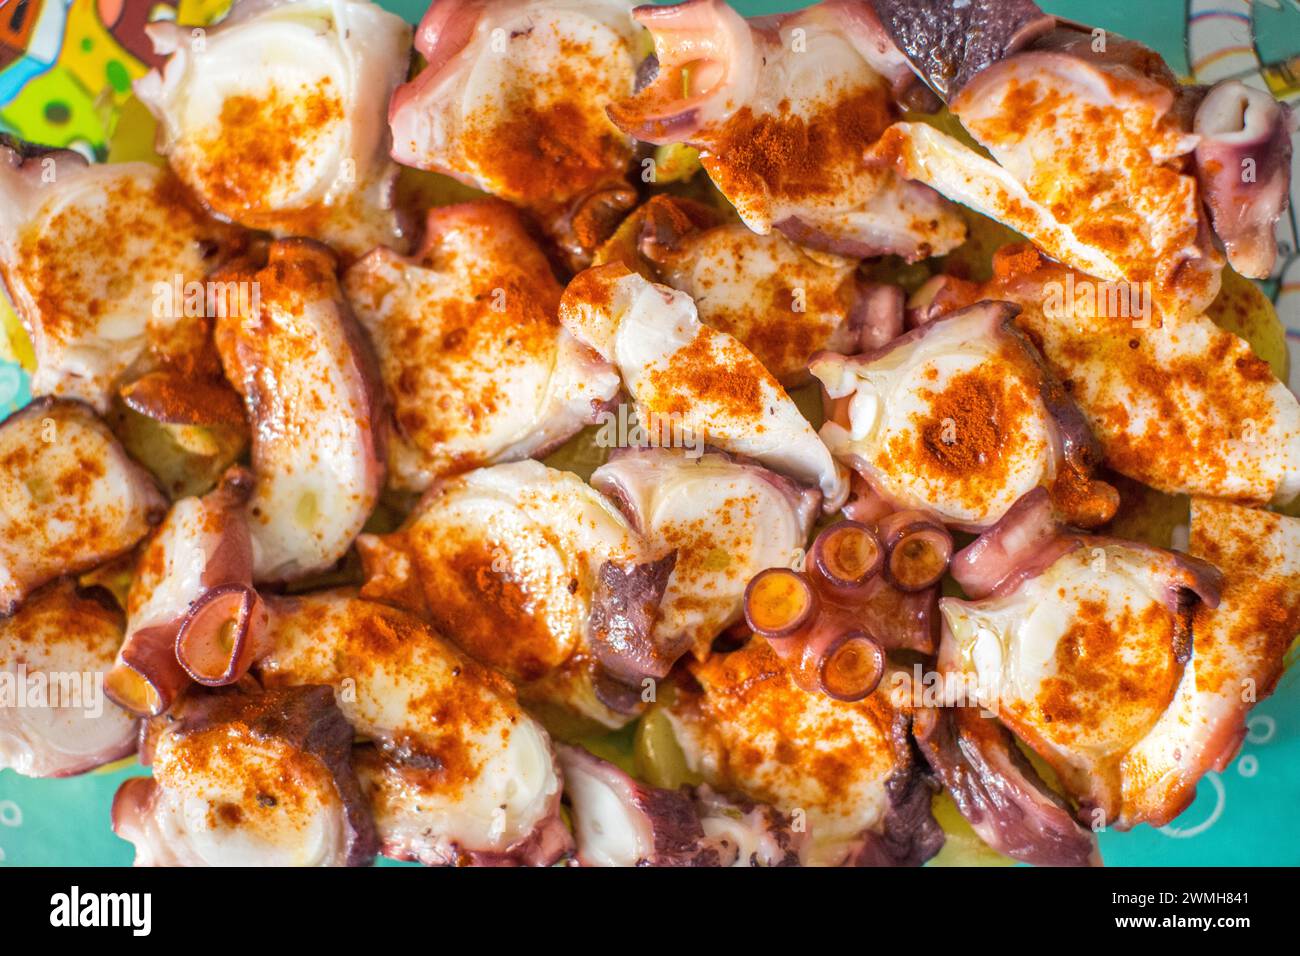 Kraken in Scheiben, gewürzt mit Paprika, ein klassisches spanisches Gericht. Stockfoto